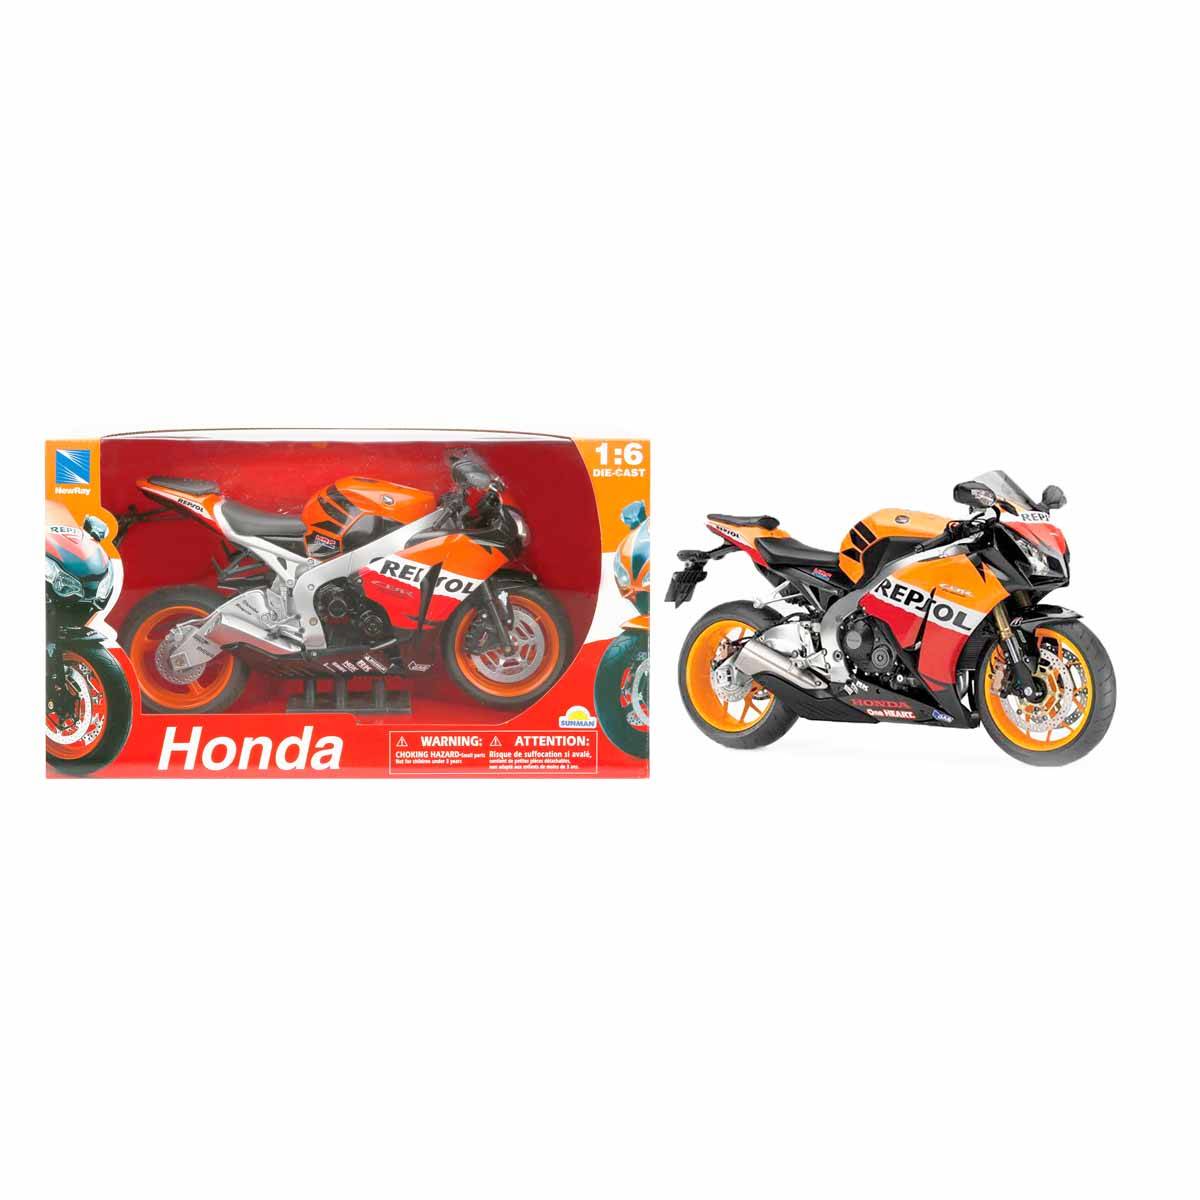 1:6 Honda Repsol 2009 Model Motor